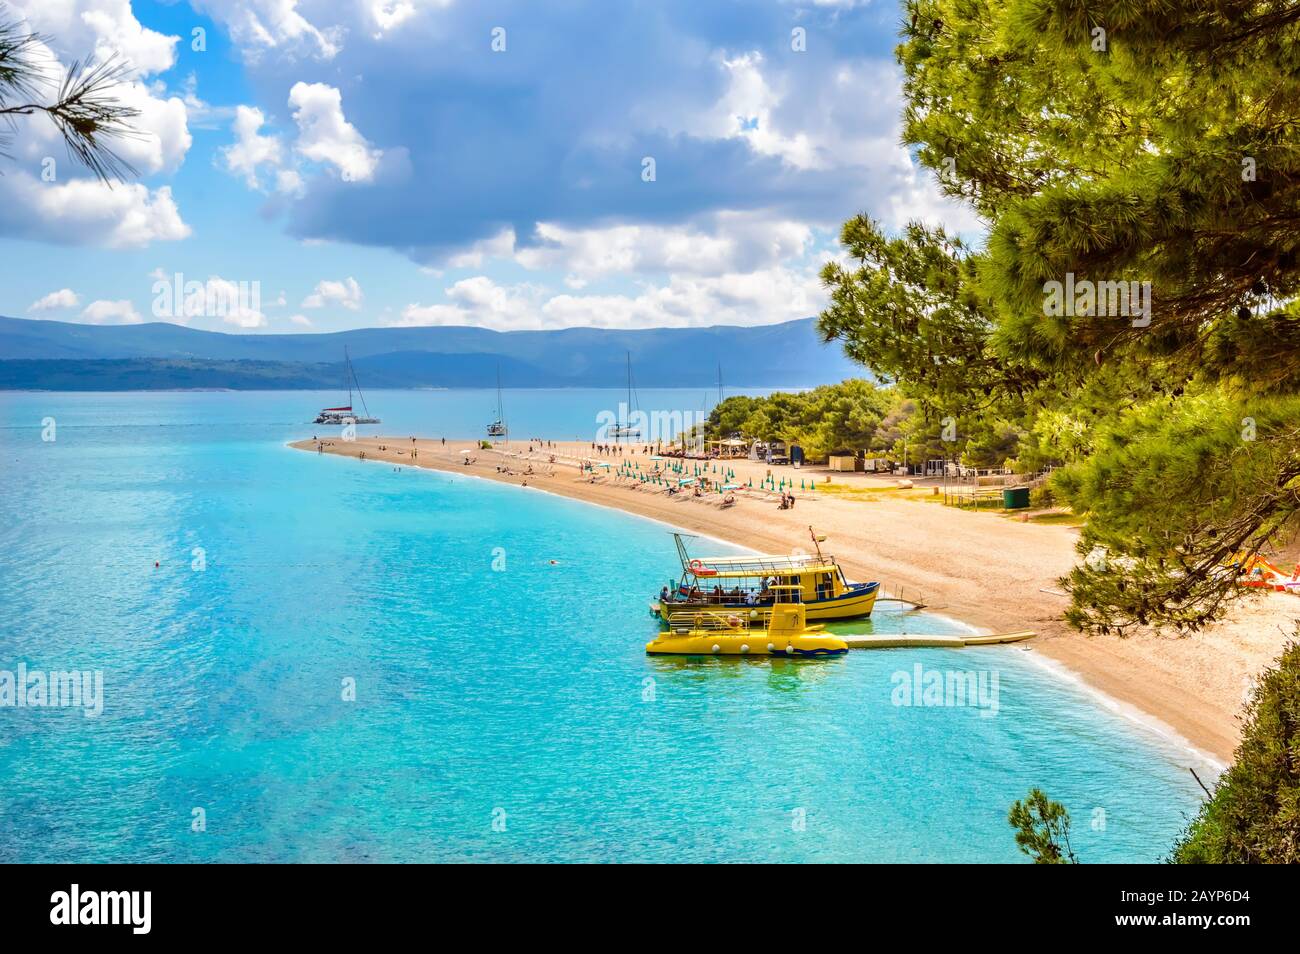 Zlatni Rat Beach, Golden Horn ou Golden Cape dans la ville de bol, île de Brac près de Split, Croatie. Plage de gravier, pins et eau turquoise de l'Adriatique Se Banque D'Images